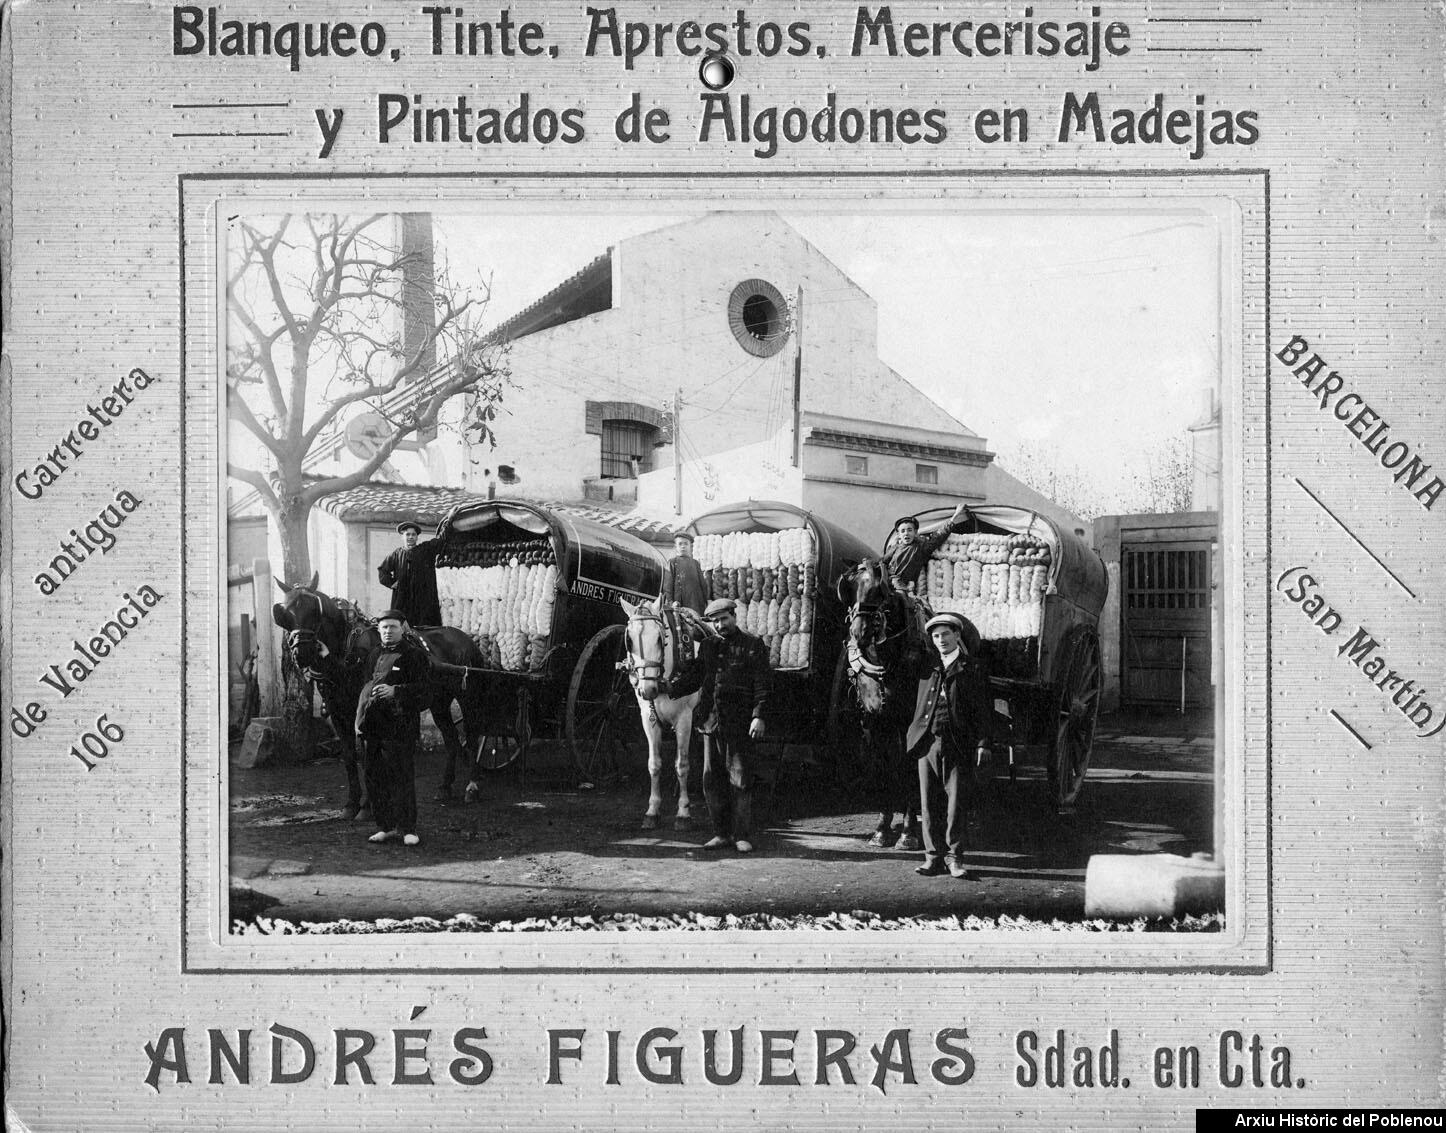 06485 Figueras [1920]